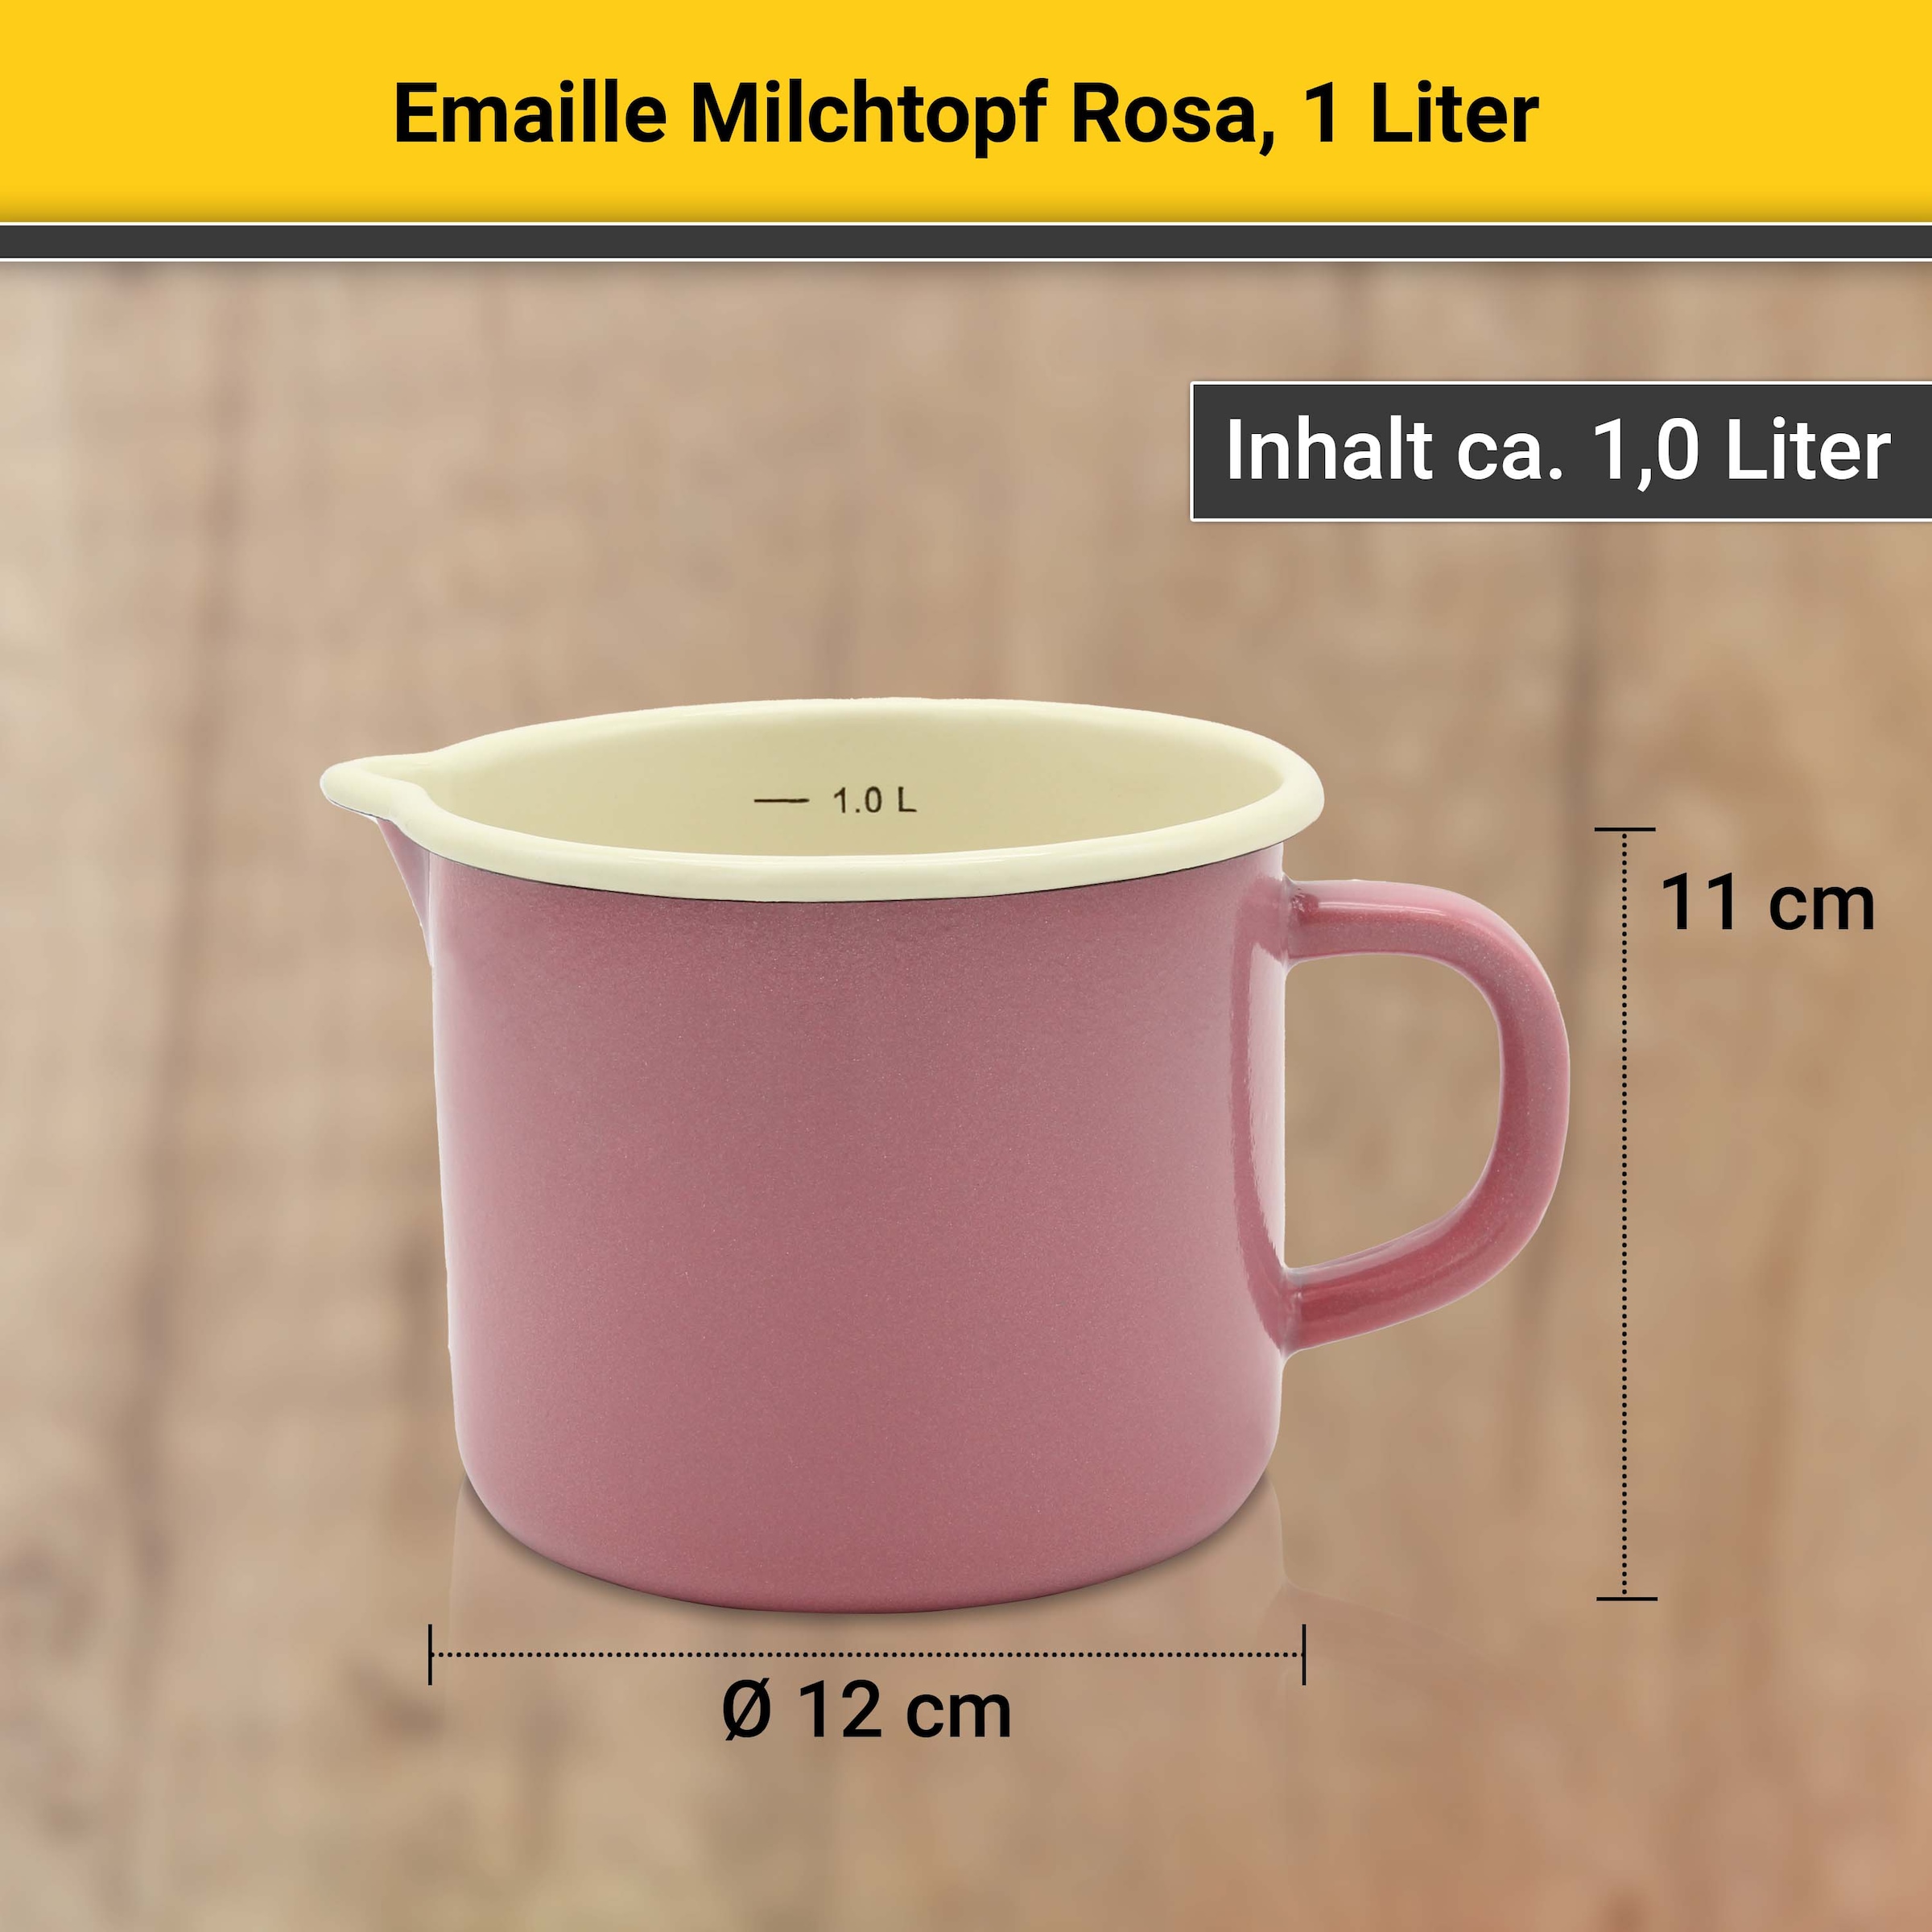 Krüger Milchtopf, Emaille, (1 tlg.), Literskala, 1 Liter, für Induktions-Kochfelder geeignet